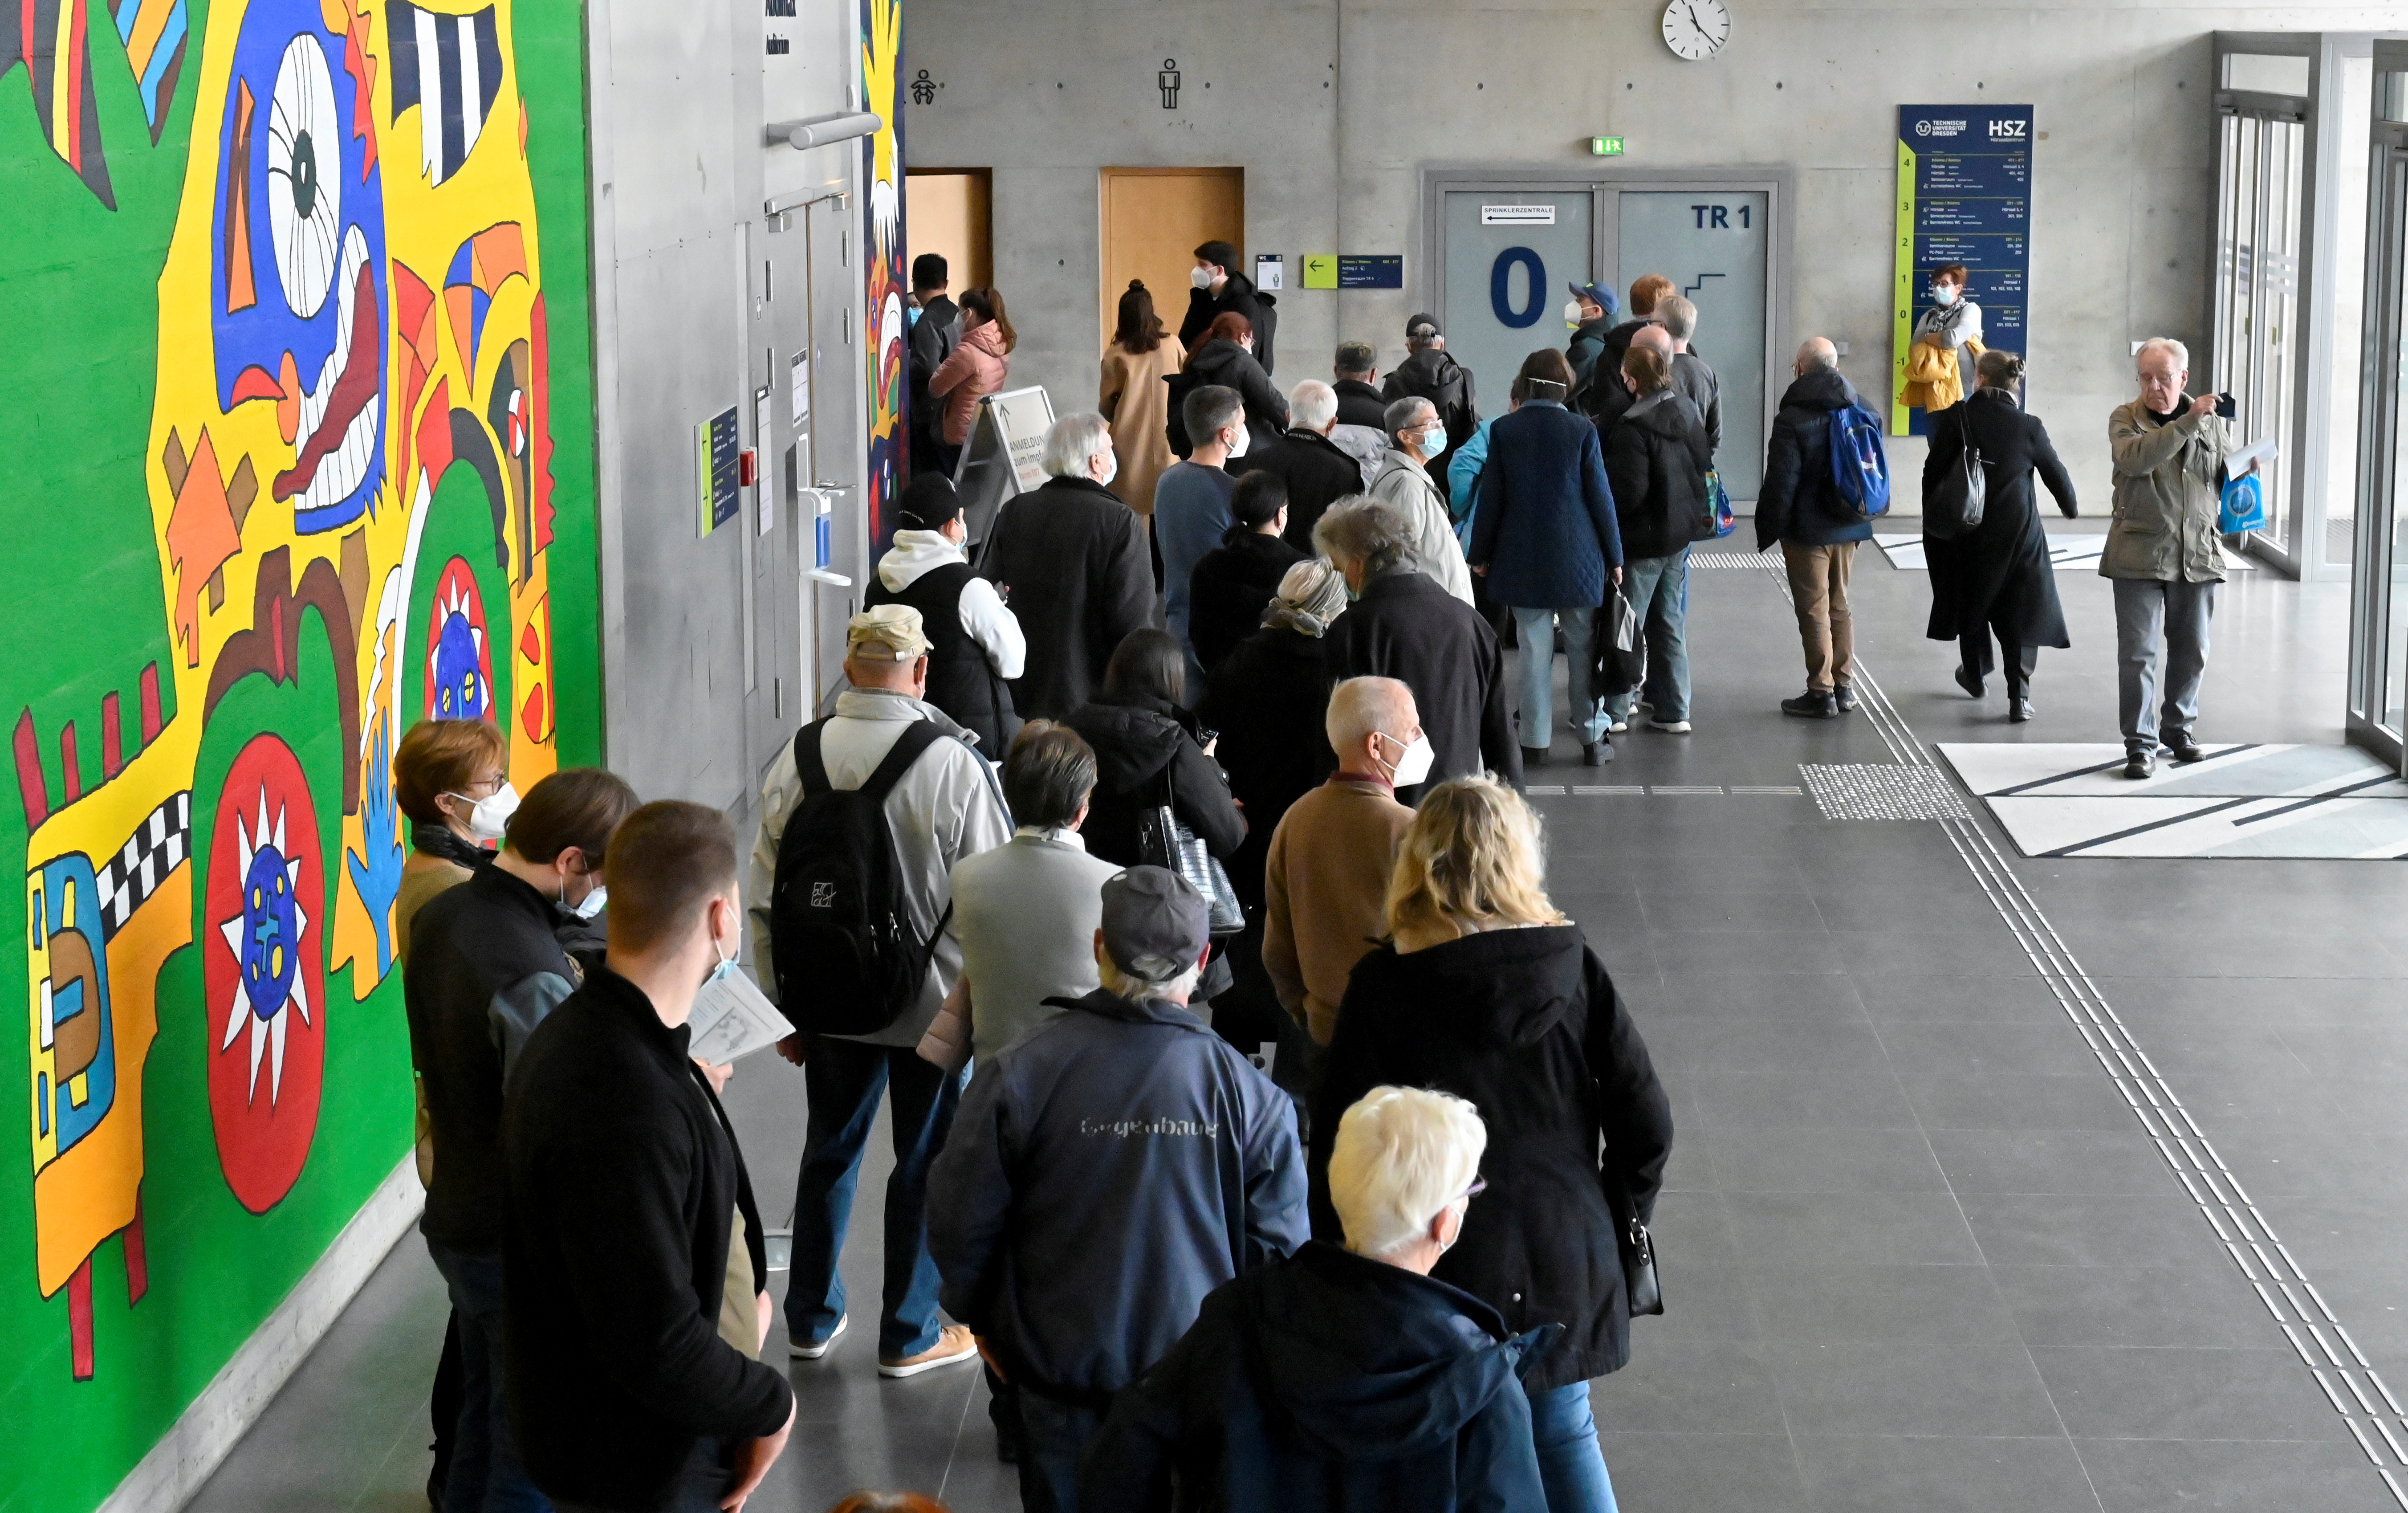 Ihmiset jonottavat rokotusta varten väliaikaiseen rokotuskeskukseen Technische Universitaet -yliopiston kampusrakennuksessa Dresdenissä, Saksassa, 8. marraskuuta 2021. REUTERS/Matthias Rietschel